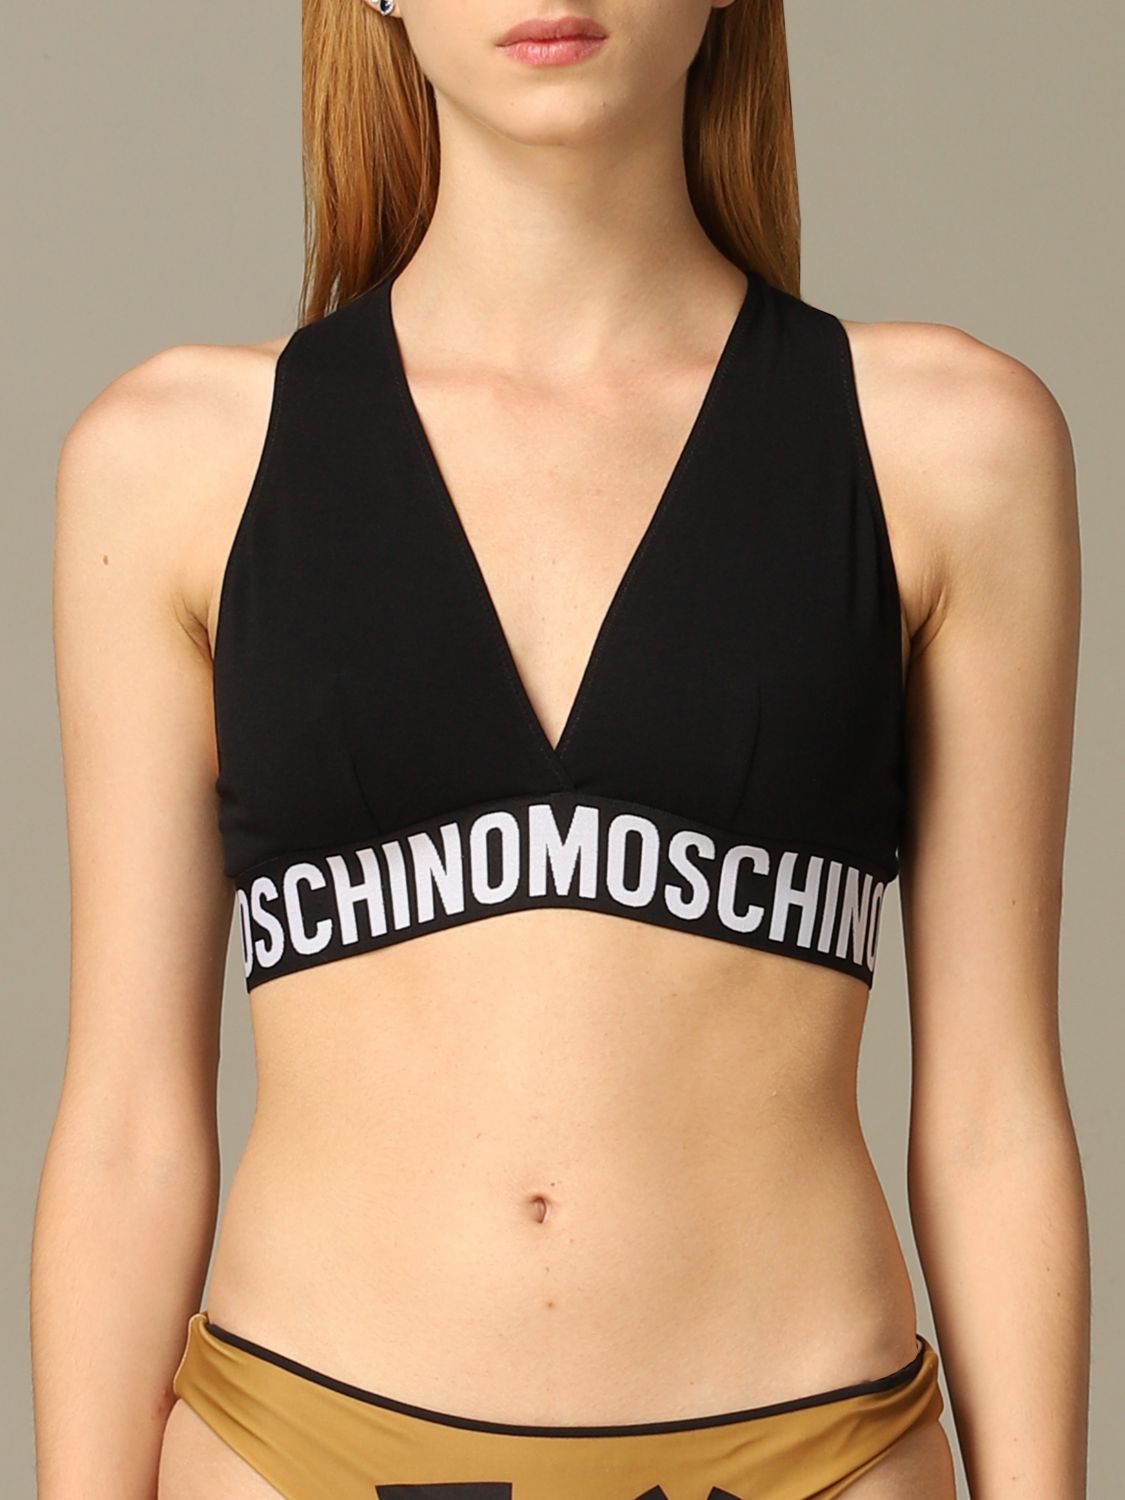 moschino womens underwear uk